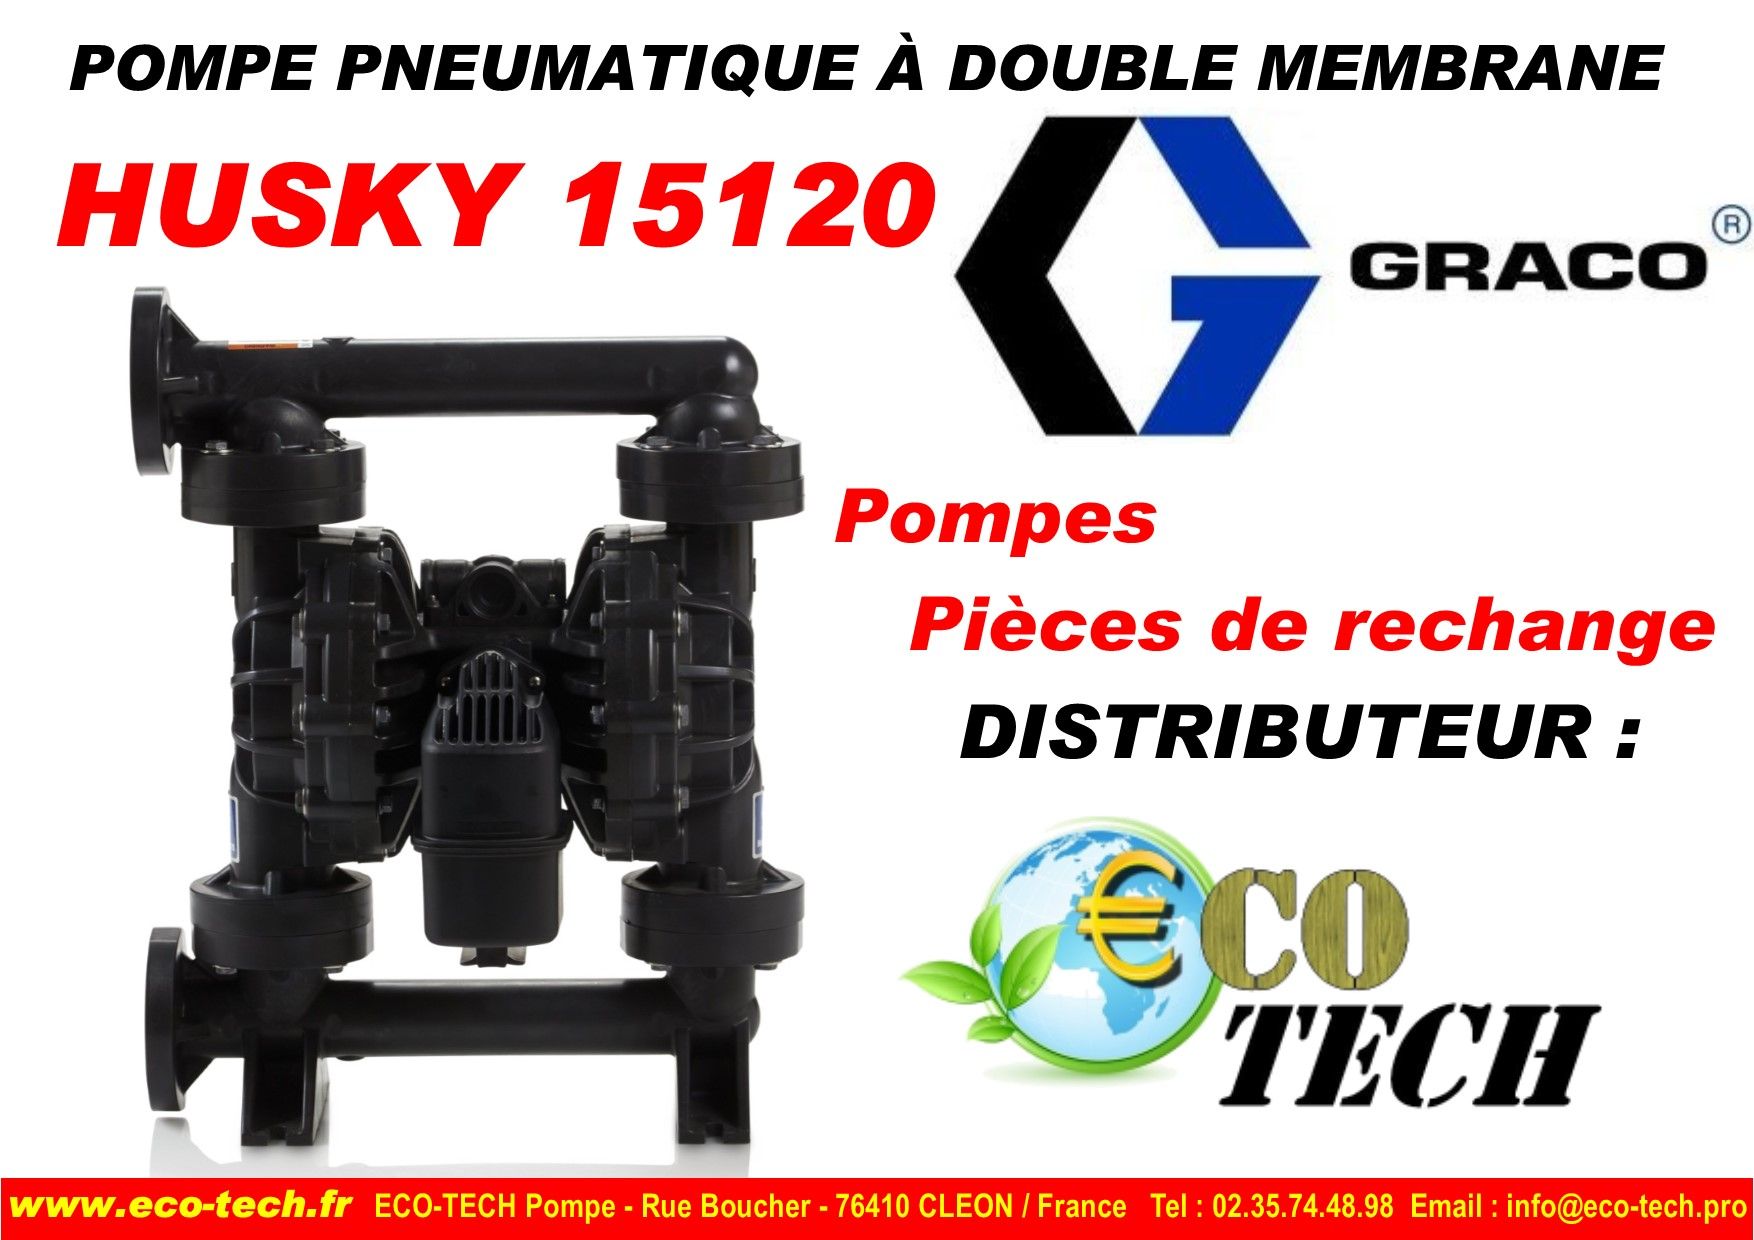 Pompe pneumatique à double membrane husky 15120 graco franche comte normandie_0